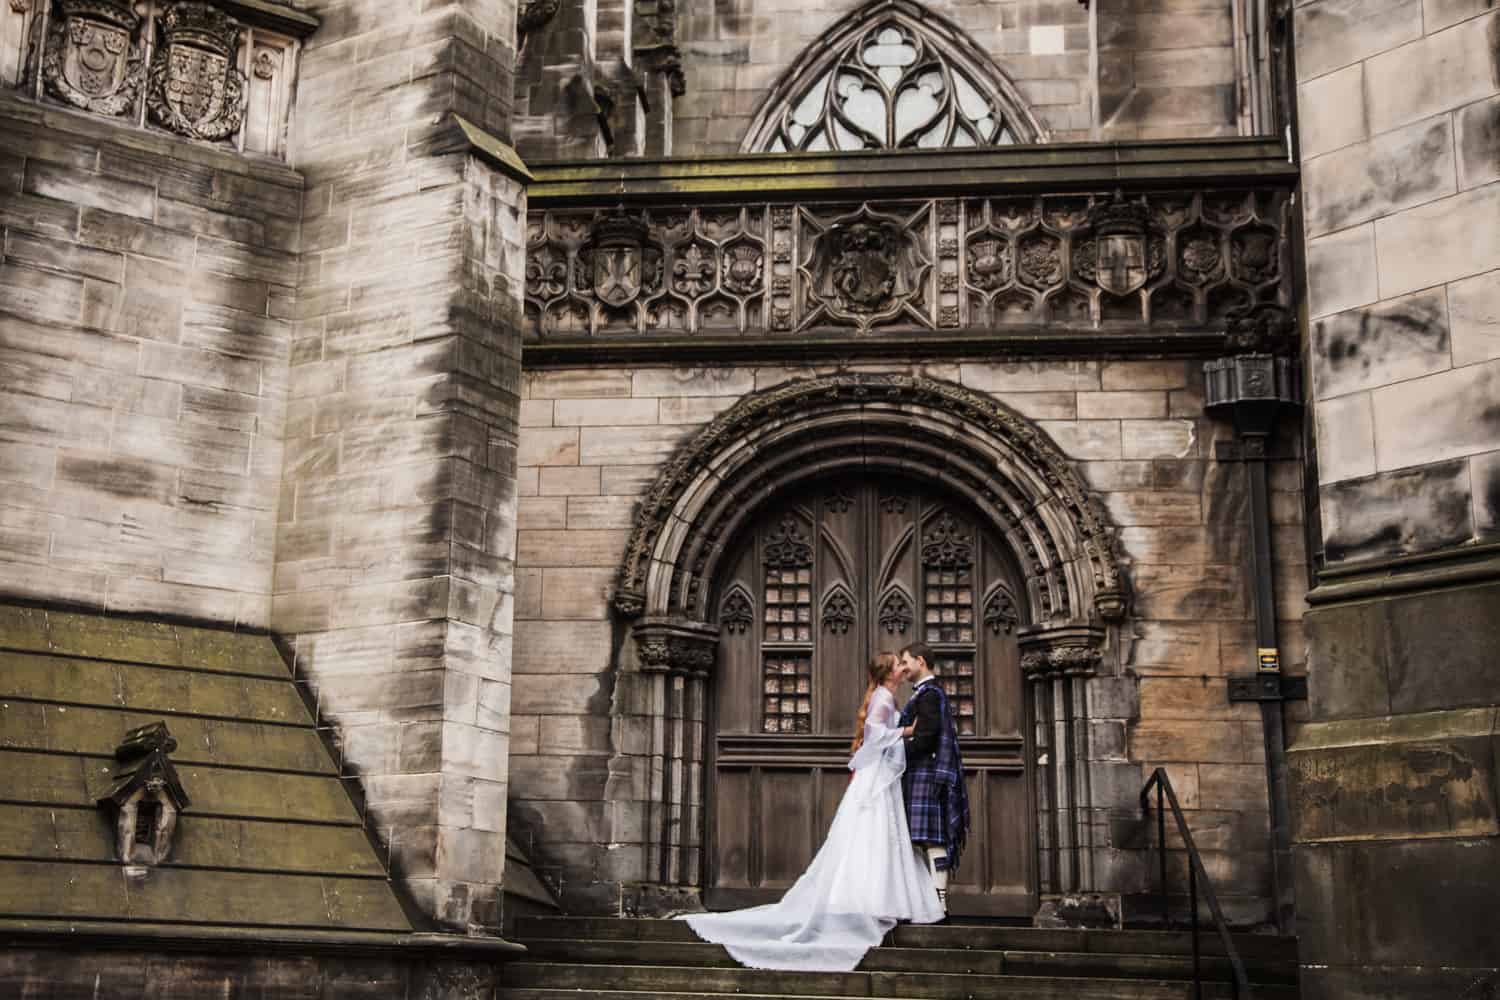 Top romantic places to propose in Edinburgh. 53